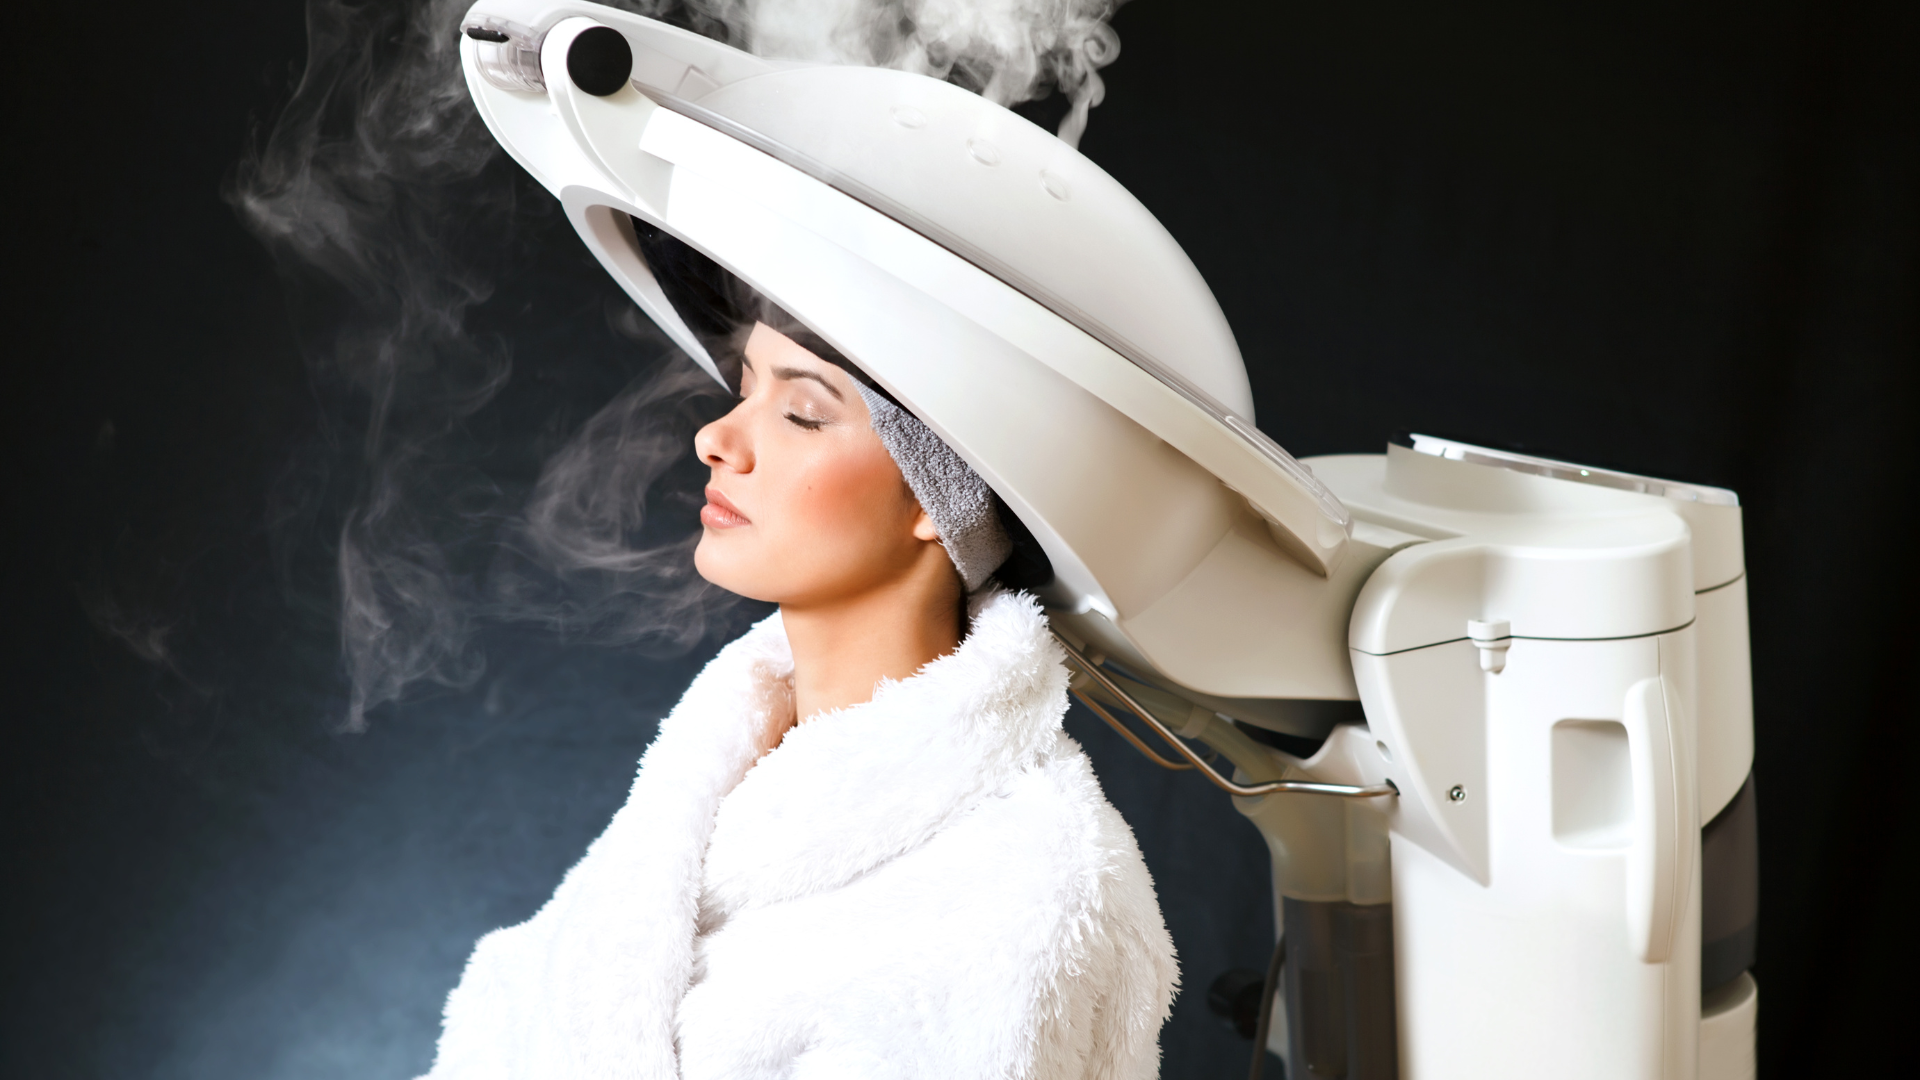 hair loss treatment using steam